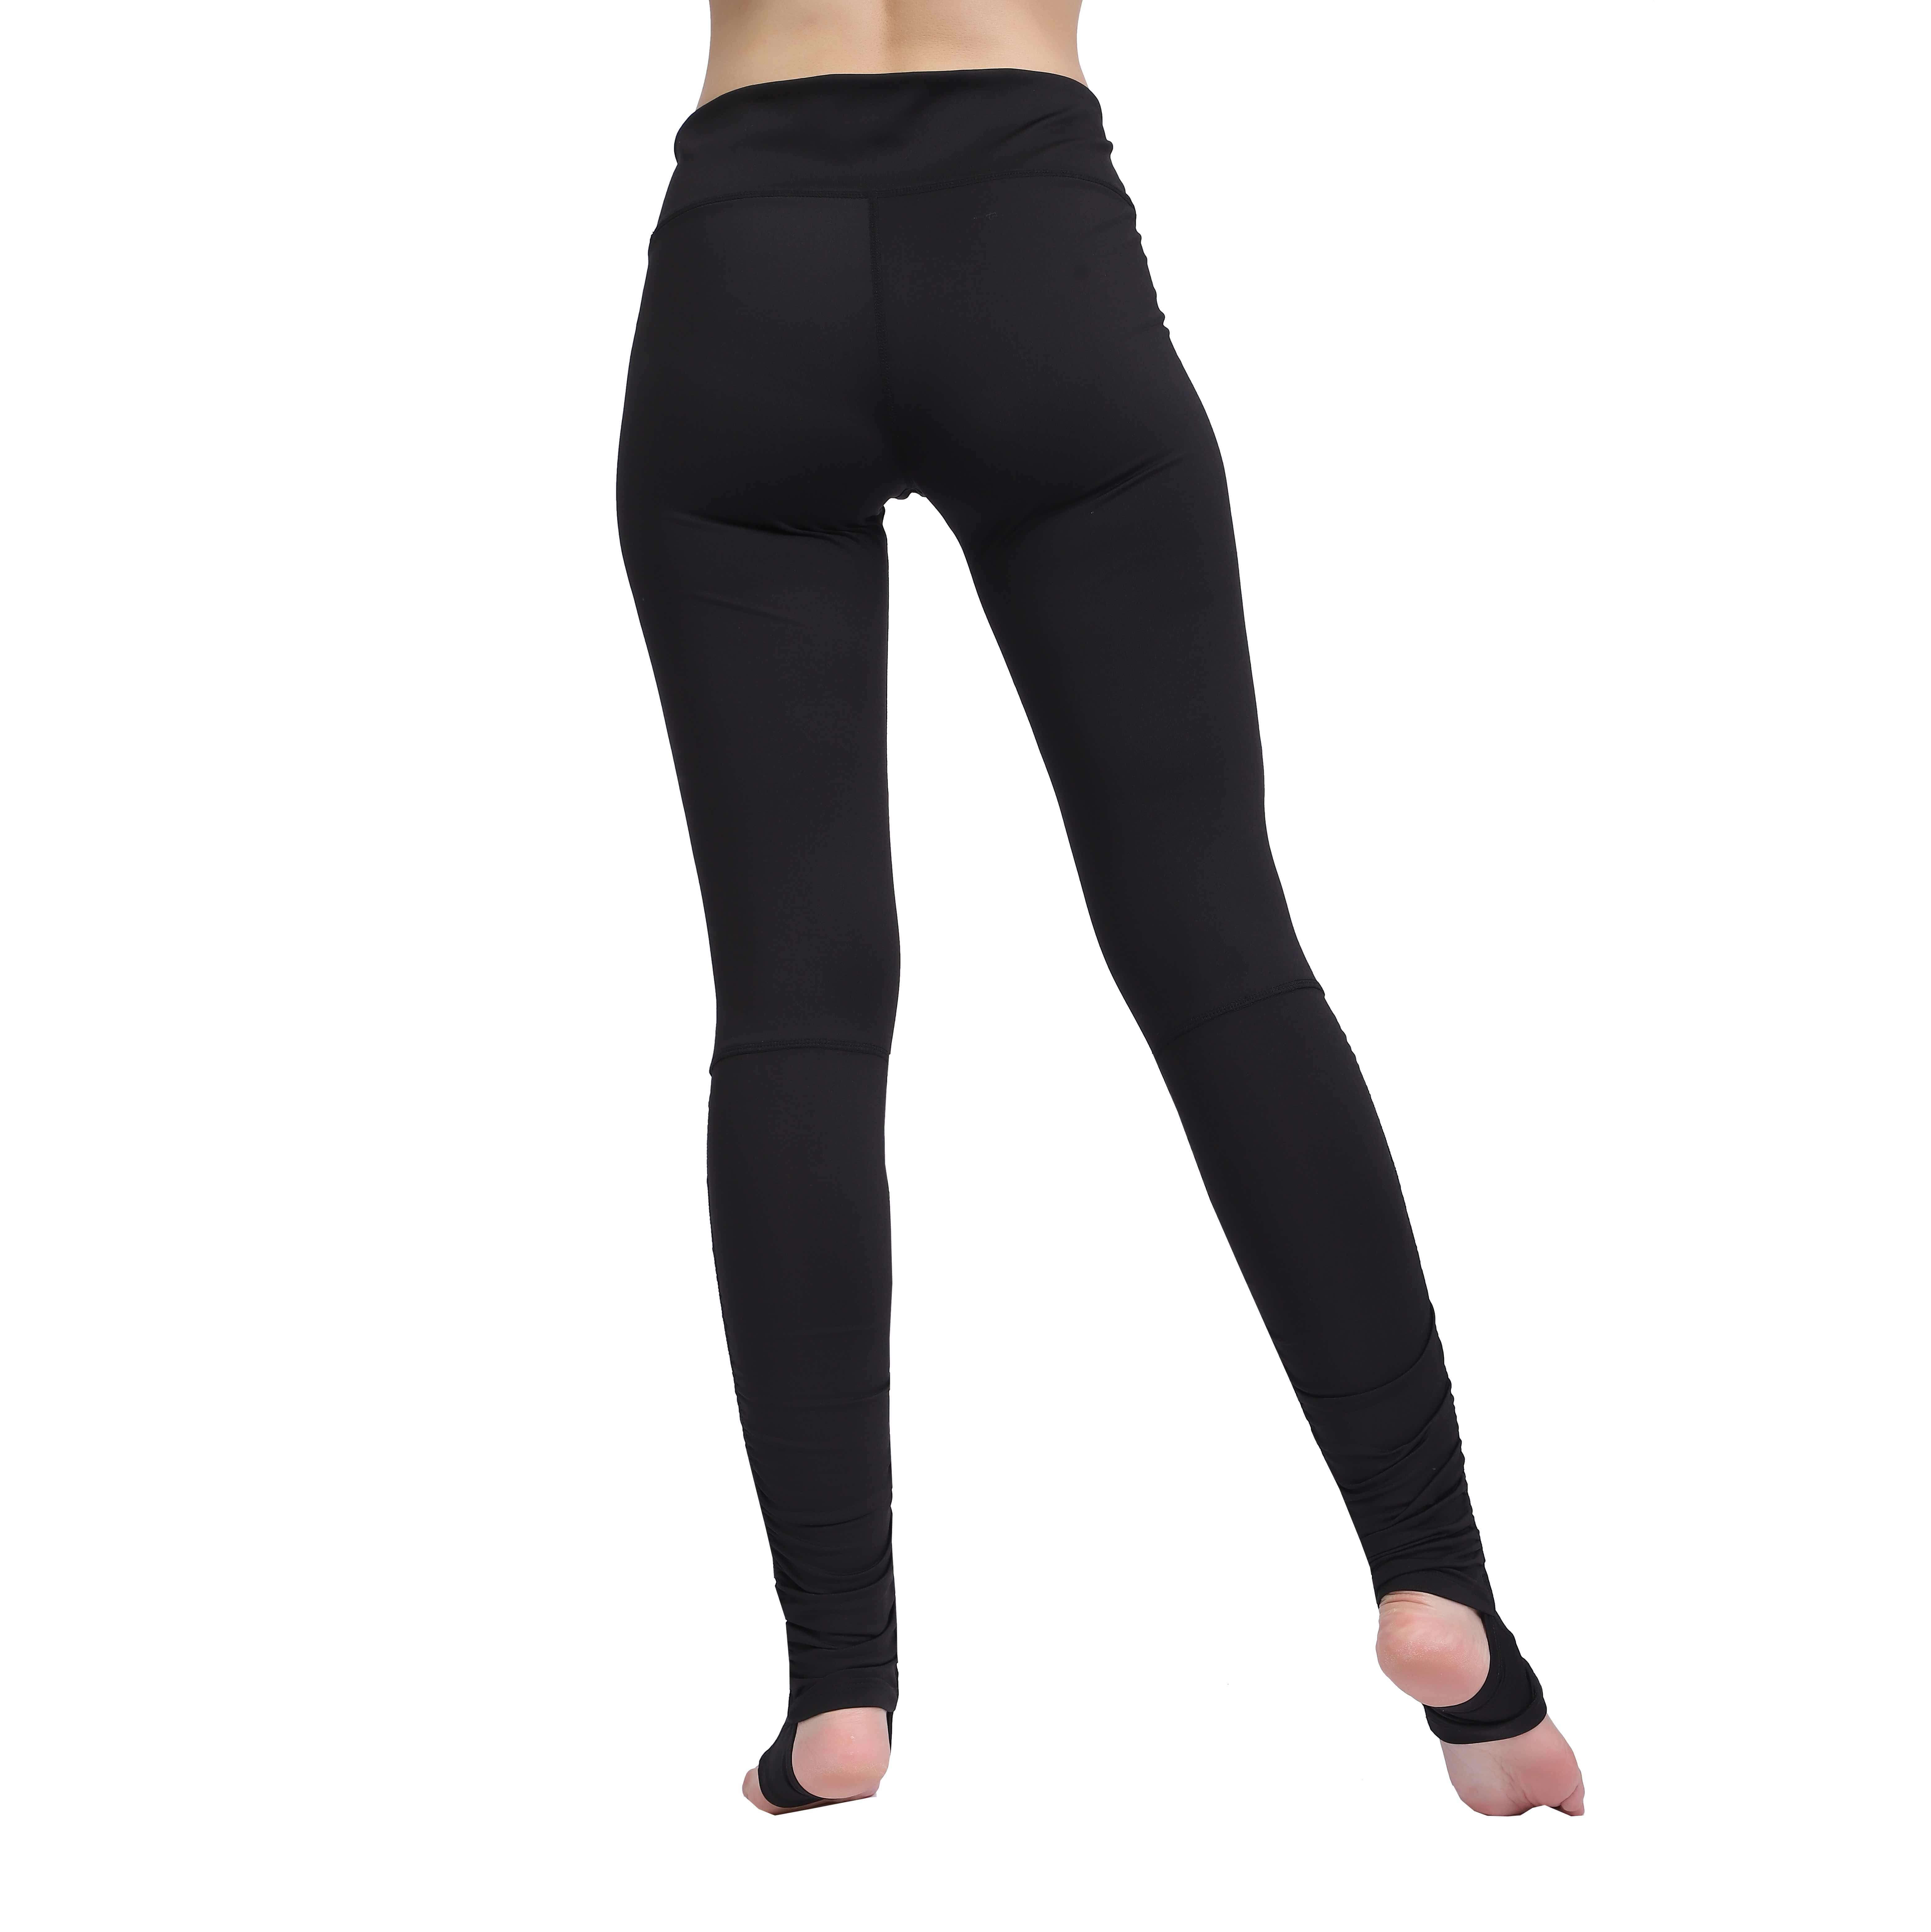 Pantalones largos de Yoga para mujer, mallas deportivas con refuerzo en la entrepierna, mallas para correr, pantalones elásticos de cintura alta para Fitness